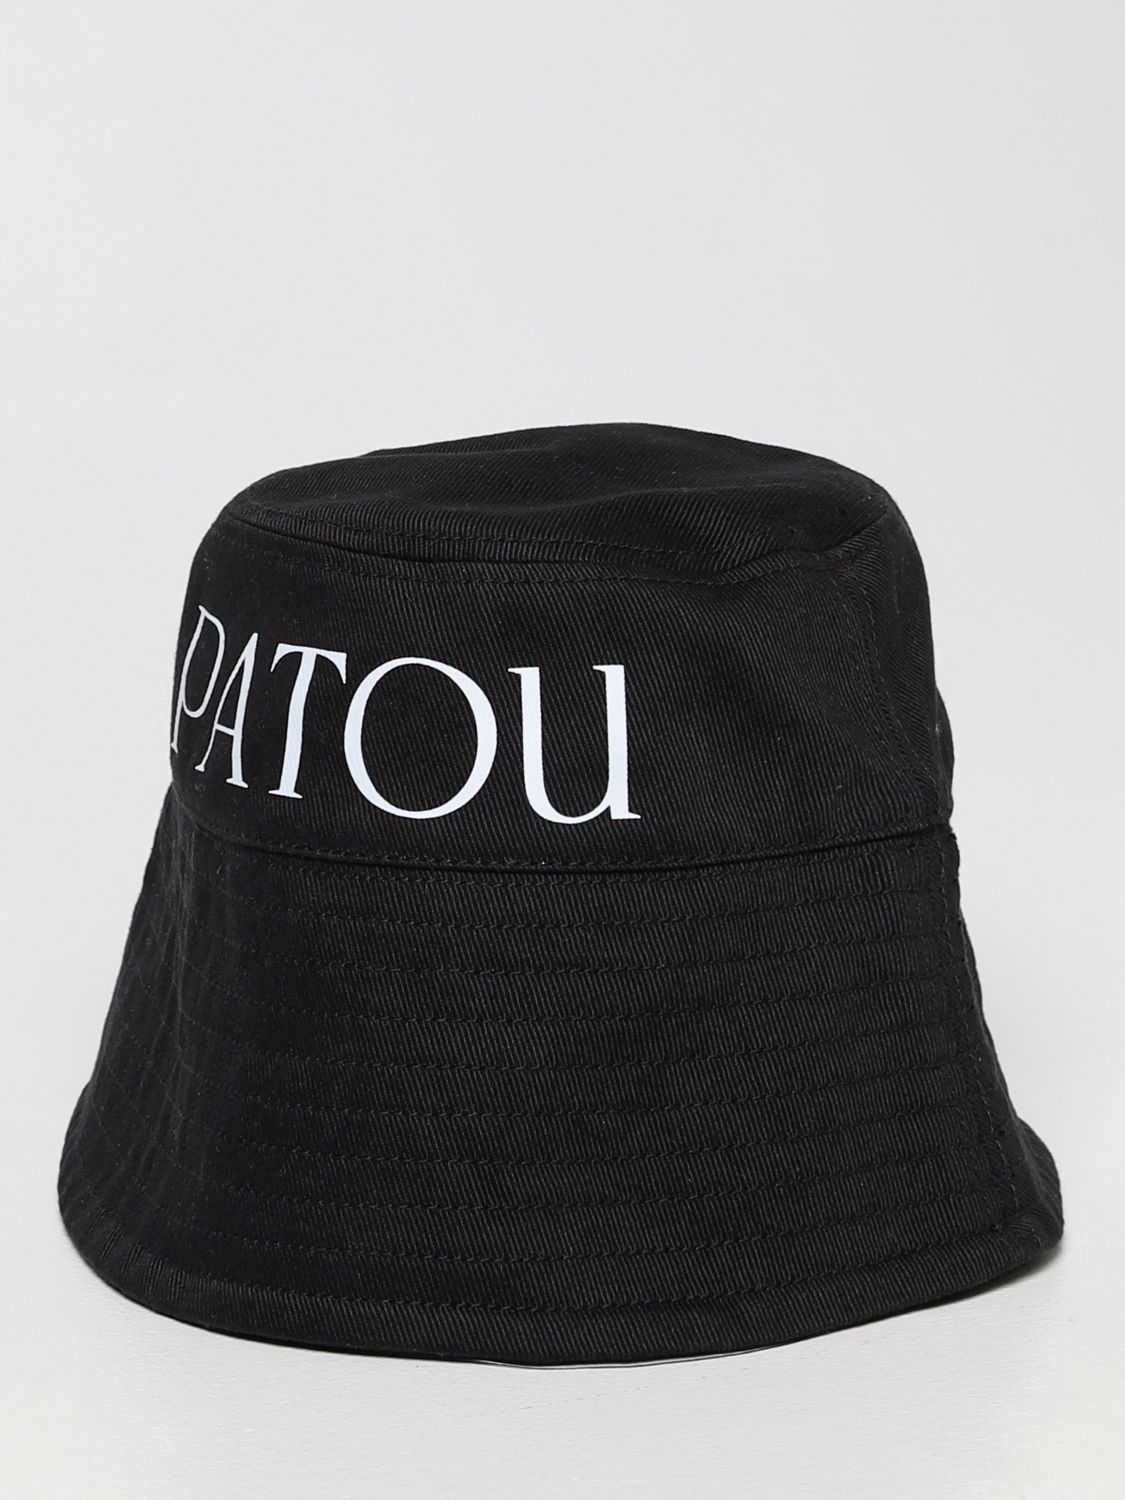 PATOU: 帽子 レディース - ブラック | 帽子 Patou AC0270076 GIGLIO.COM